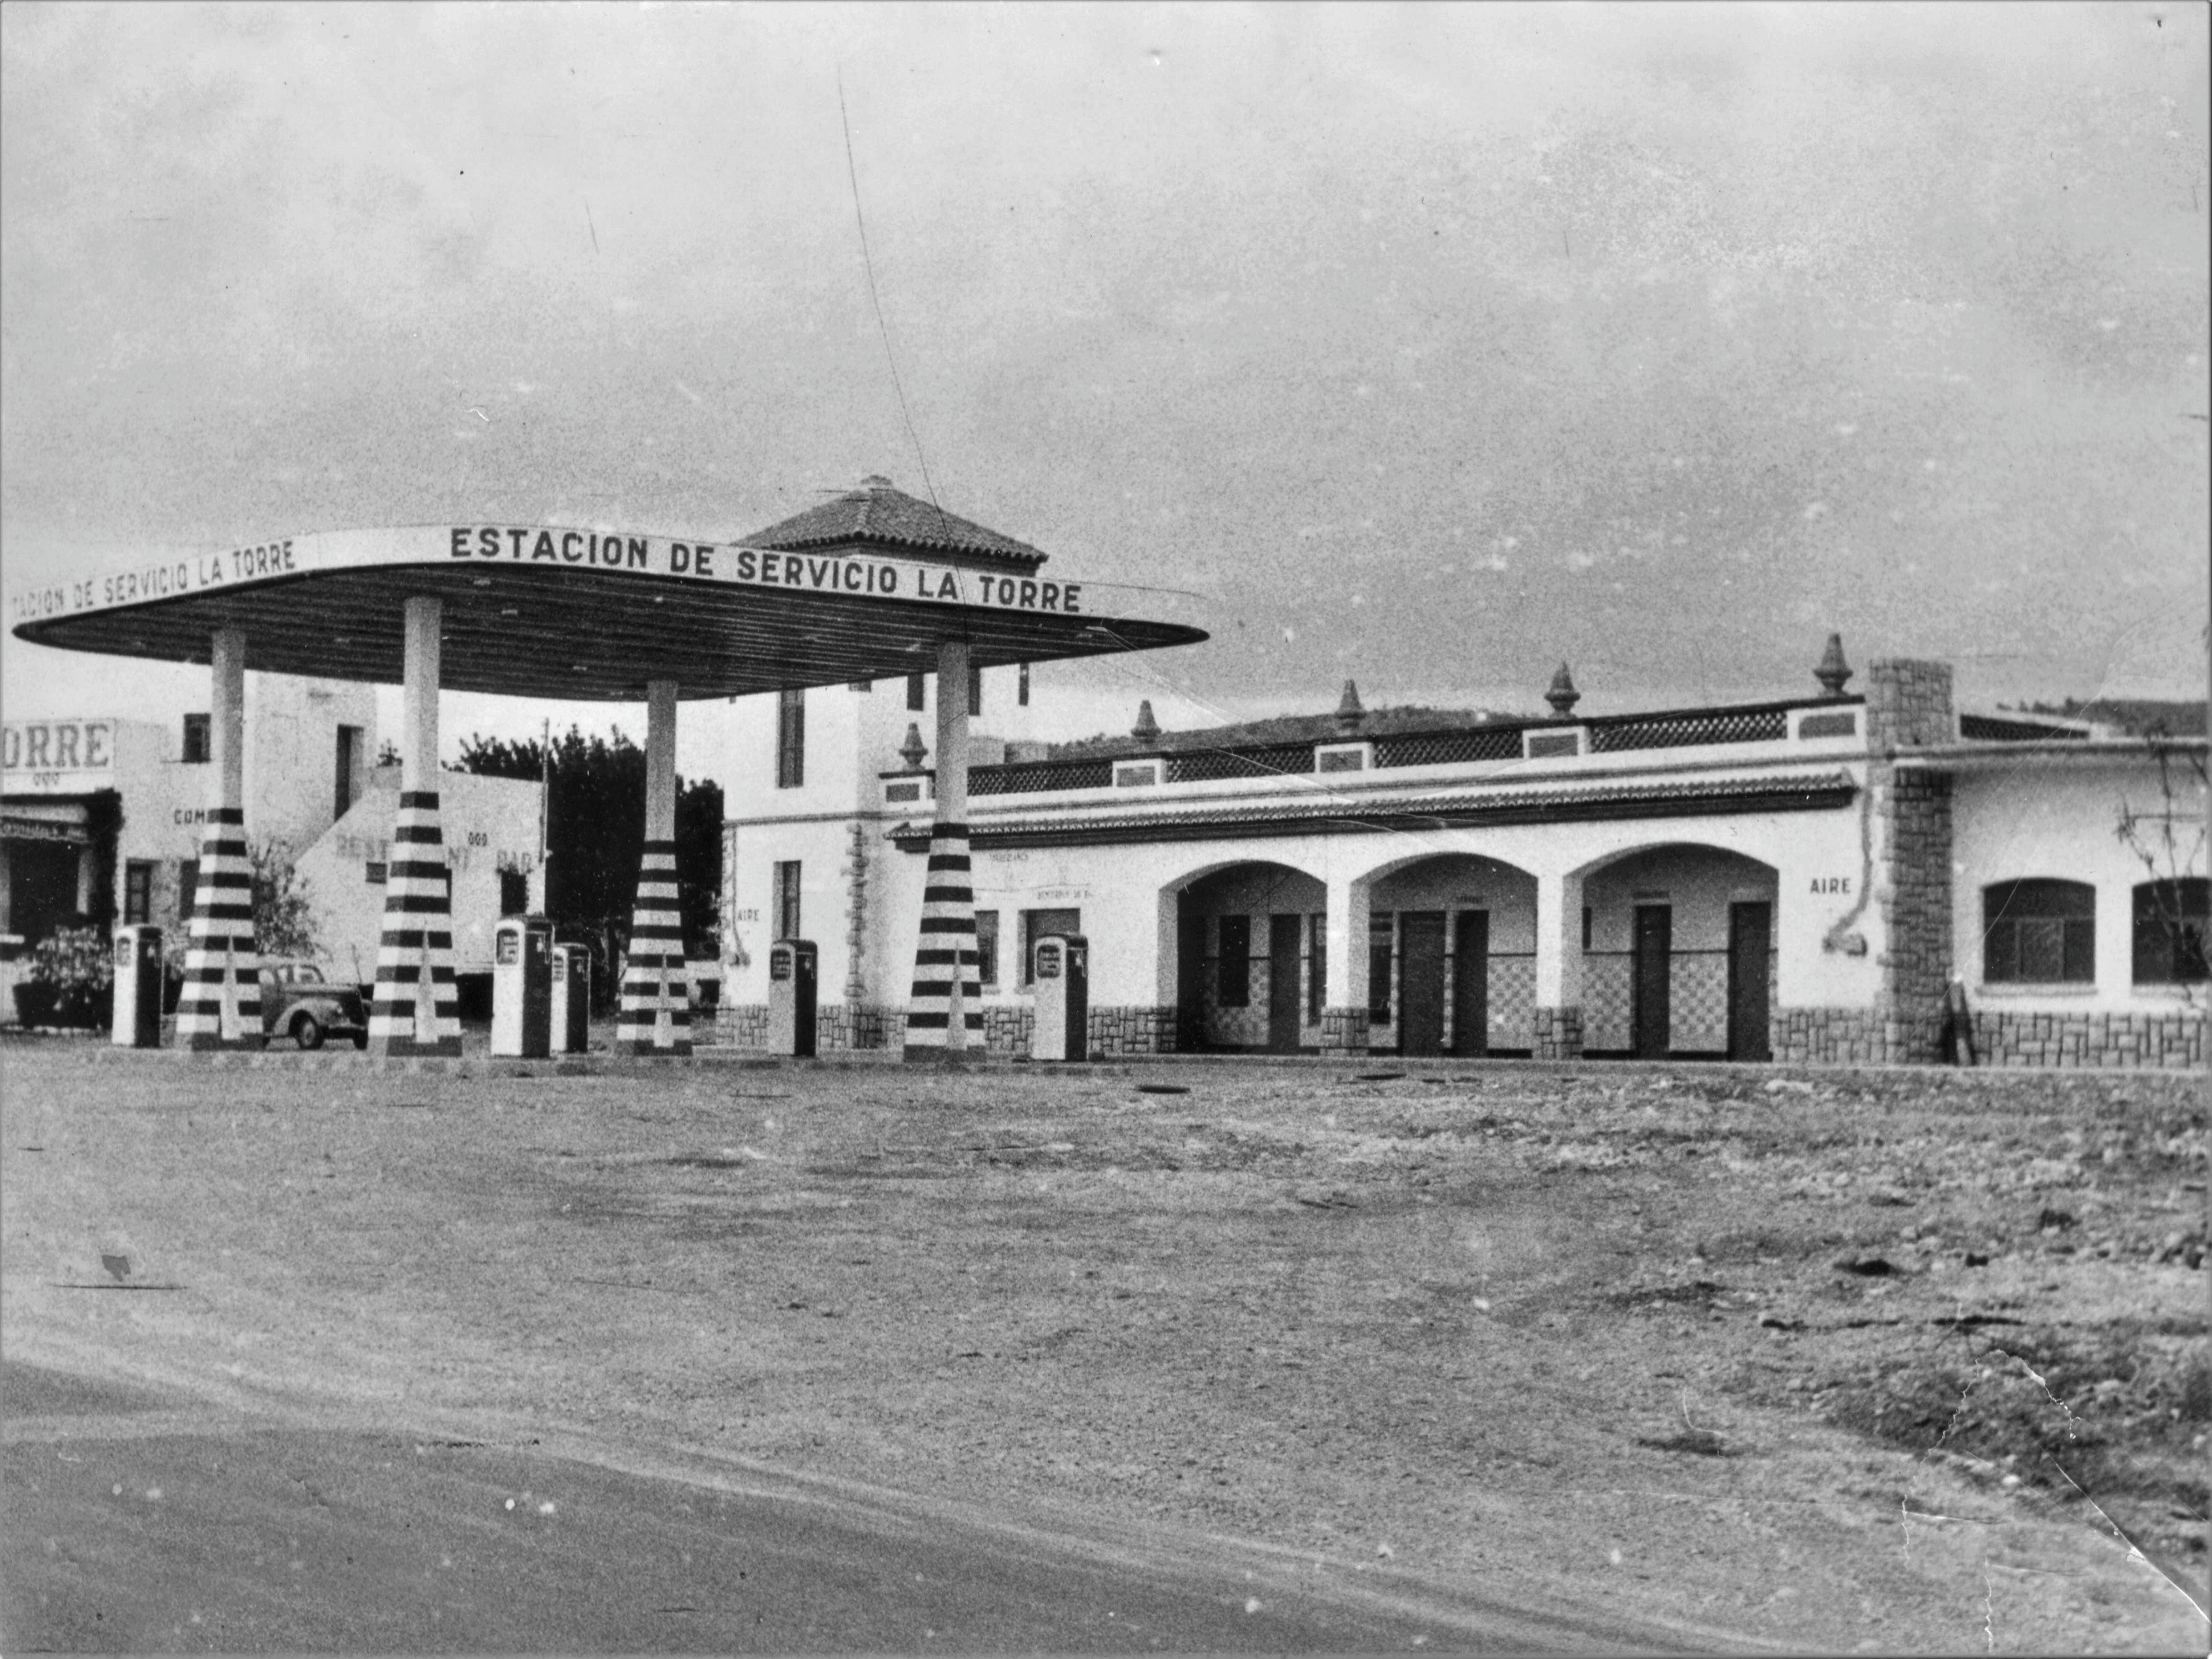 Images Estación de Servicio La Torre